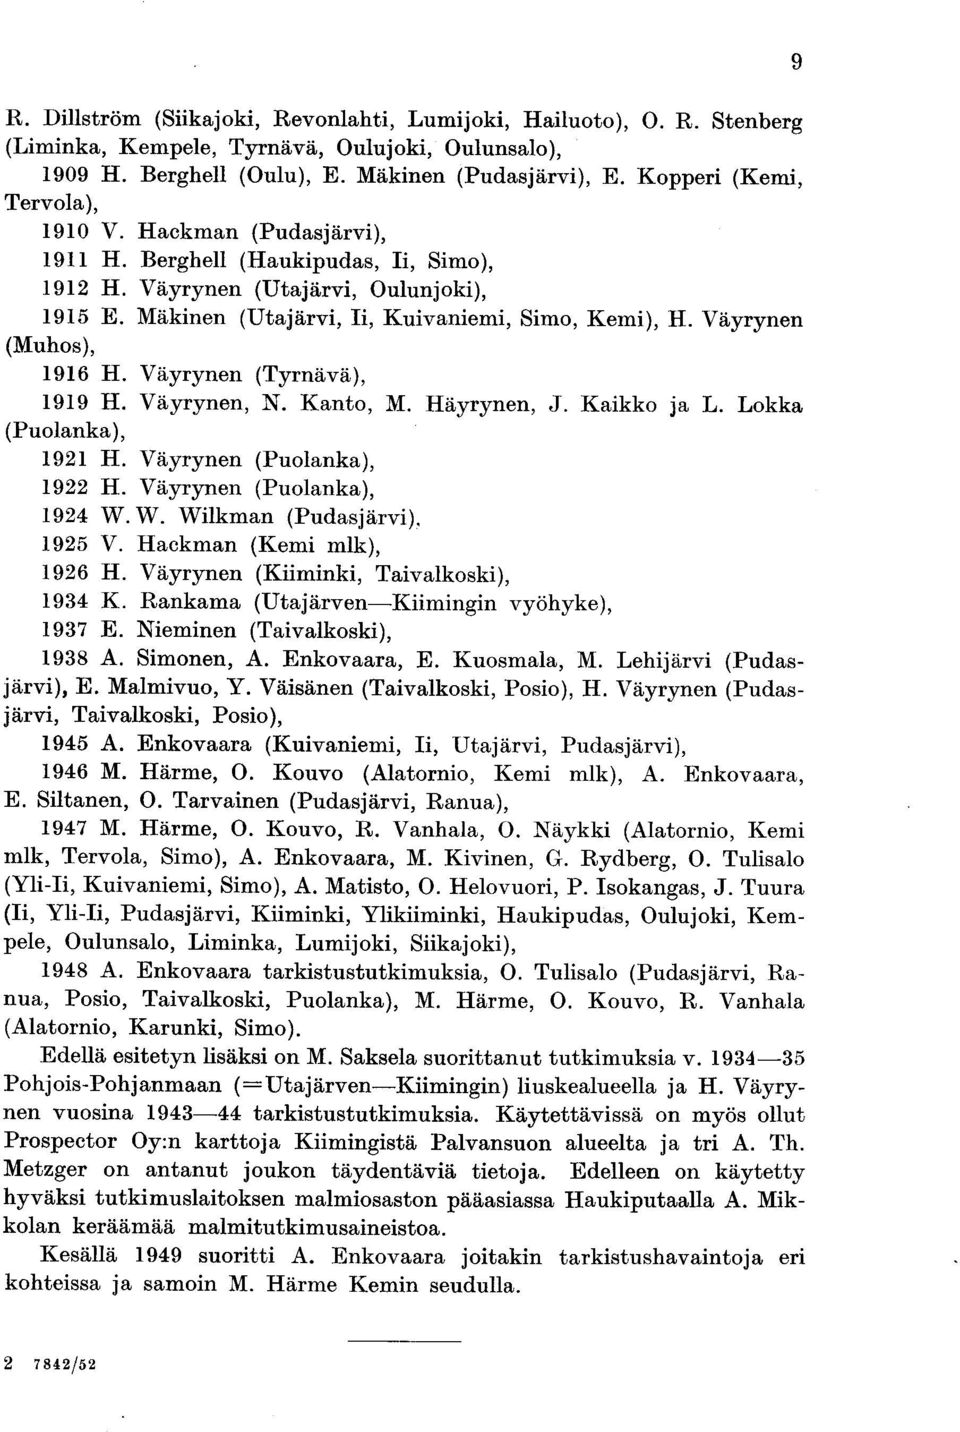 Väyrynen (Muhos), 1916 H. Väyrynen (Tyrnävä), 1919 H. Väyrynen, N. Kanto, M. Häyrynen, J. Kaikko ja L. Lokka (Puolanka), 1921 H. Väyrynen (Puolanka), 1922 H. Väyrynen (Puolanka), 1924 W.